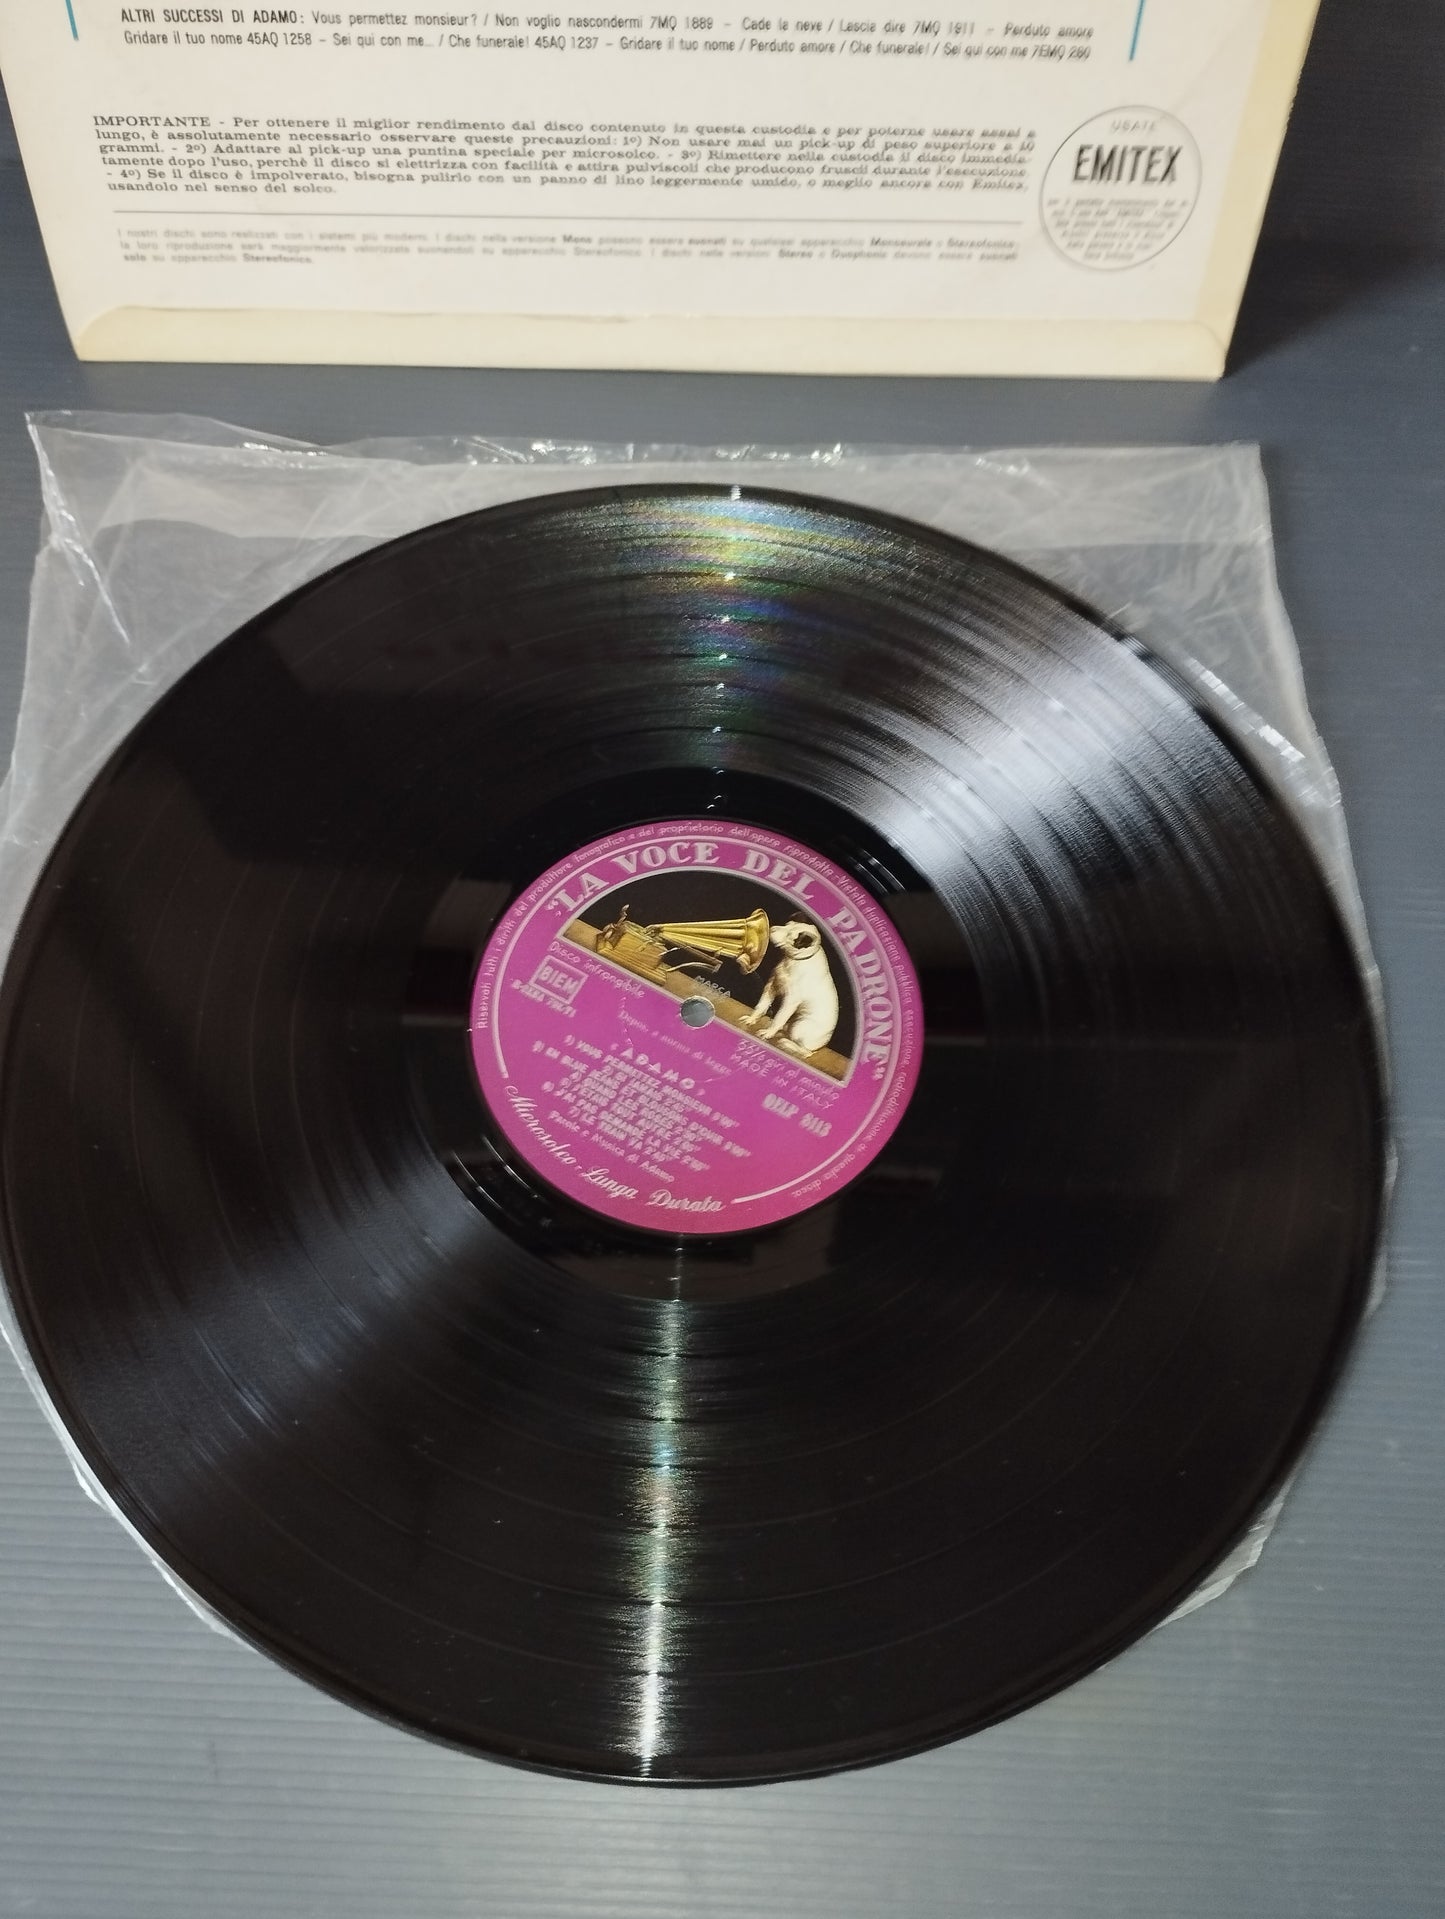 Adamo" Omonino LP 33 rpm
 Published in 1964 by La Voce del Padrone